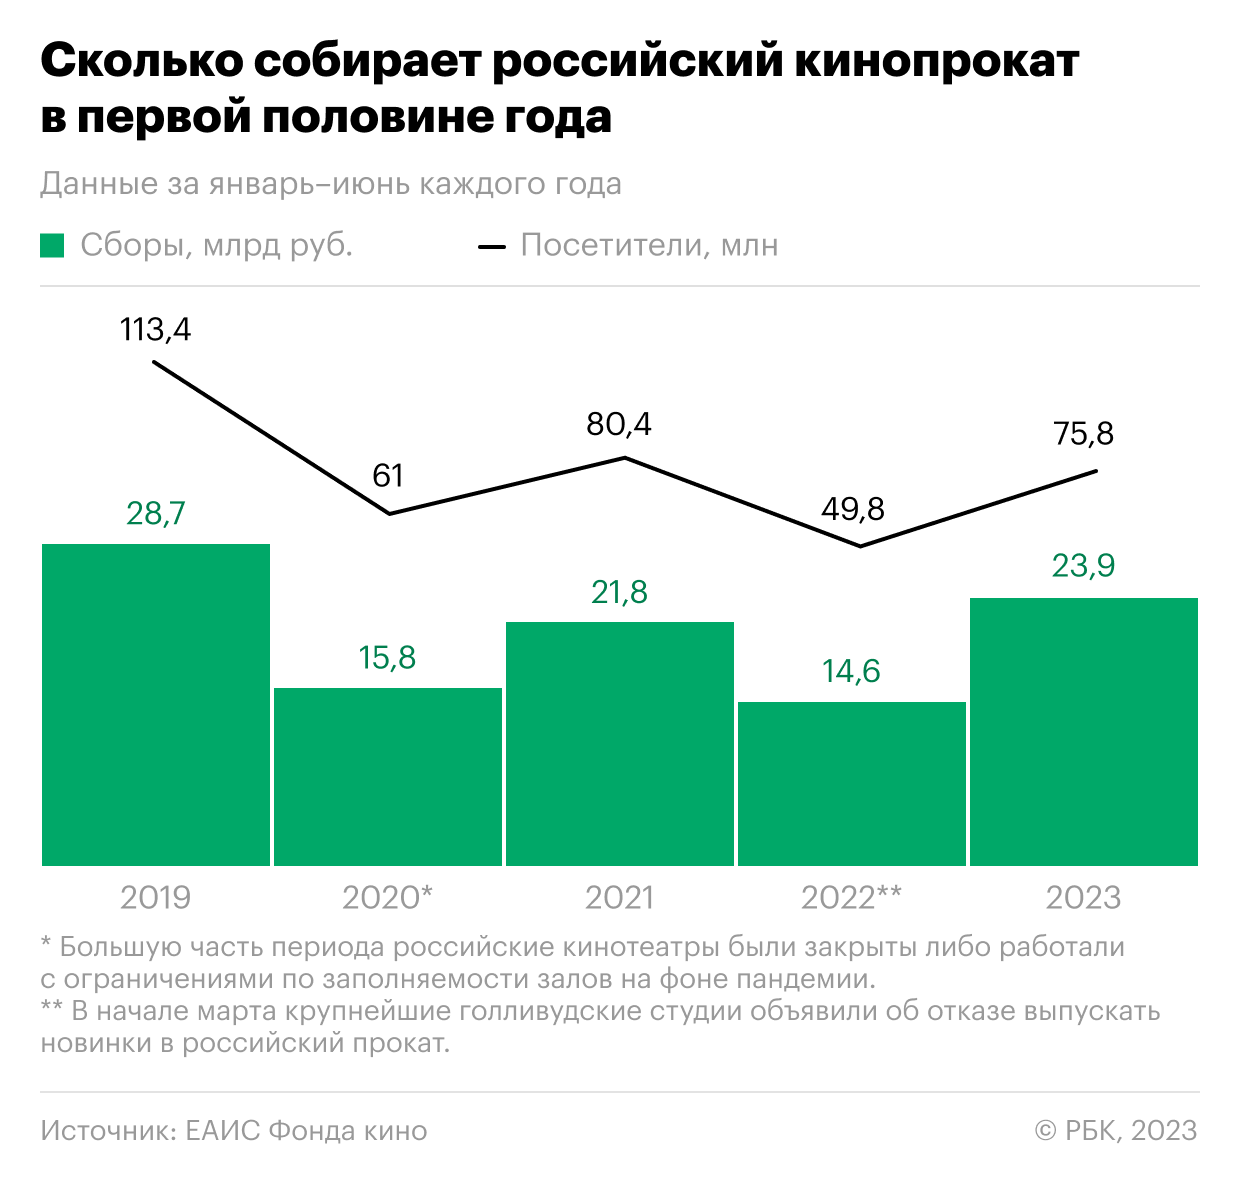 Как сборы от кино в России вернулись на уровень до пандемии. Инфографика